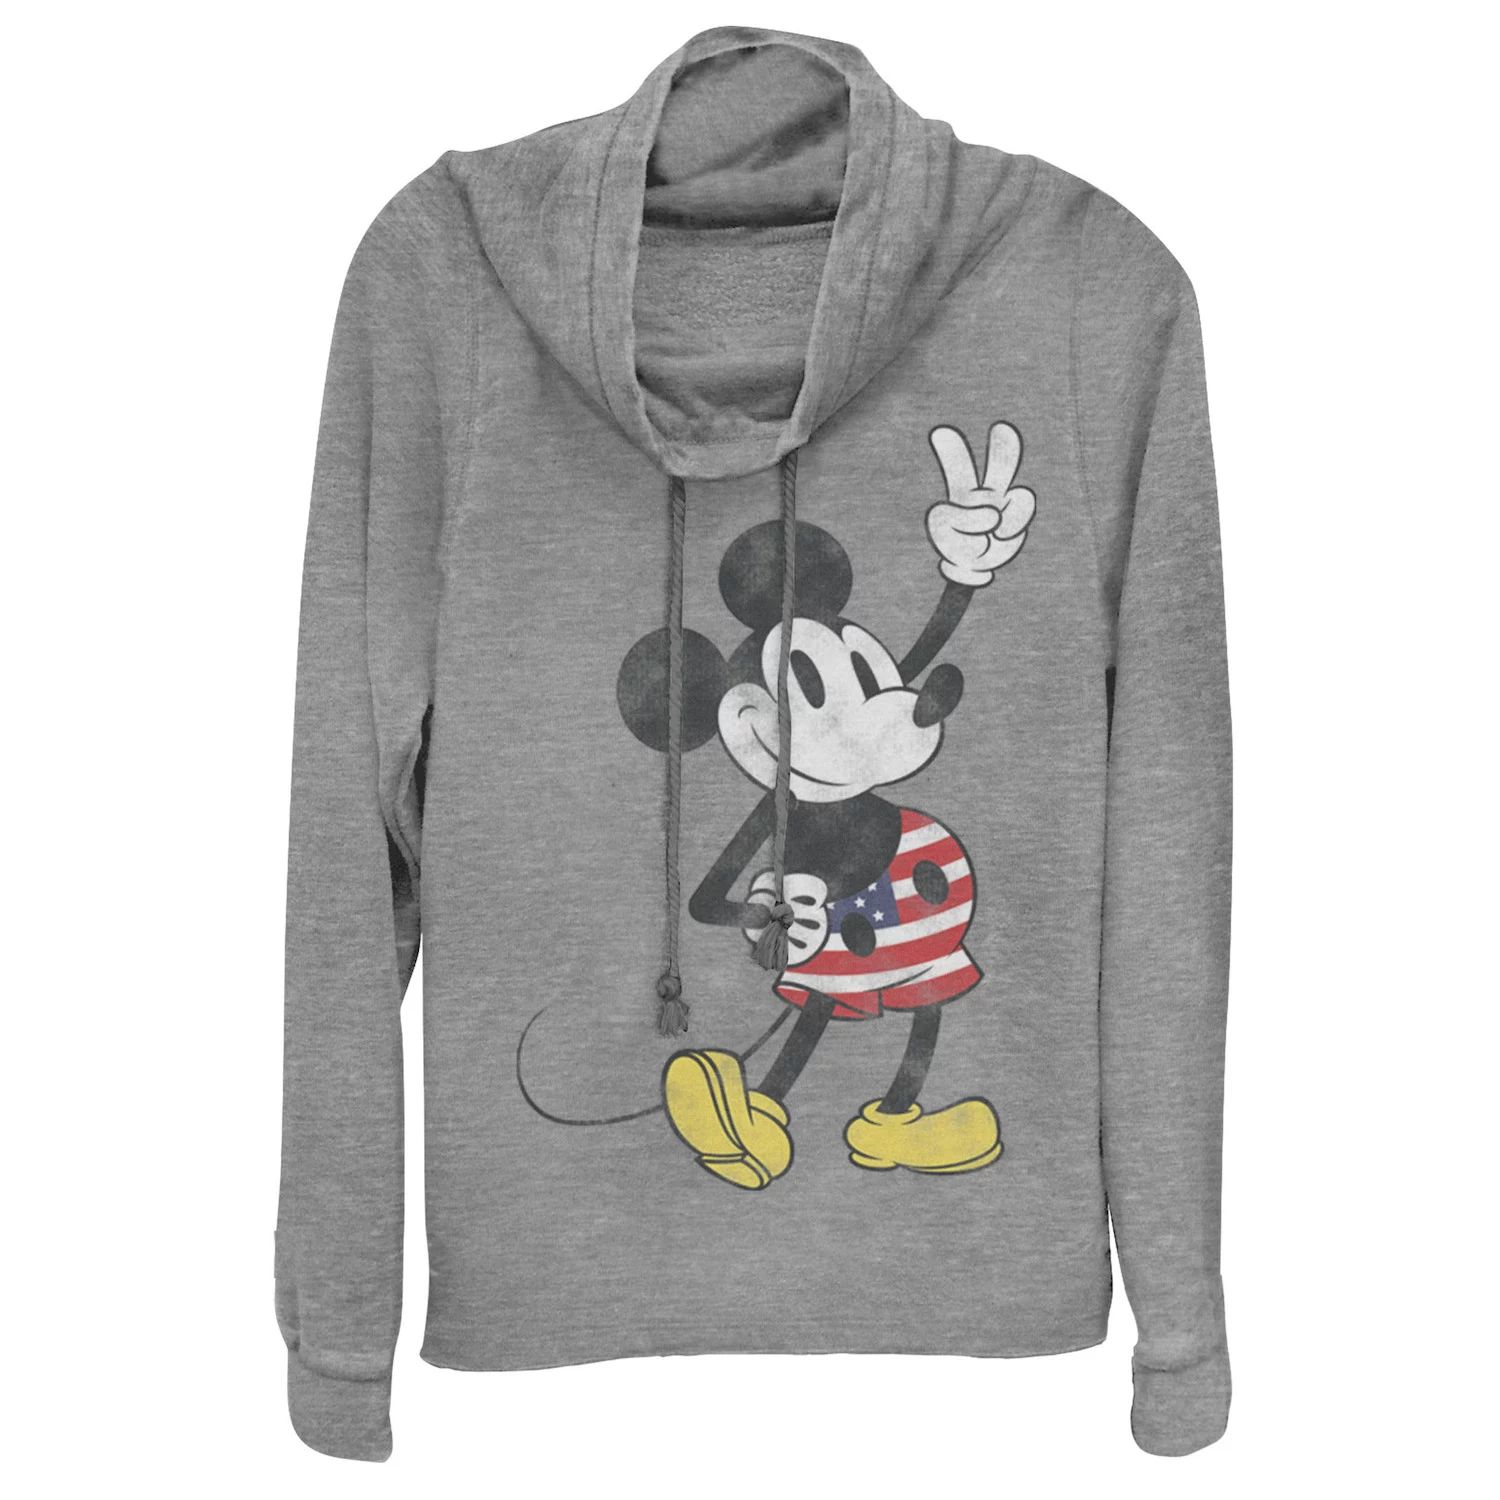 Пуловер с хомутом и воротником-хомутом Disney Disney Mickey Mouse для юниоров Licensed Character